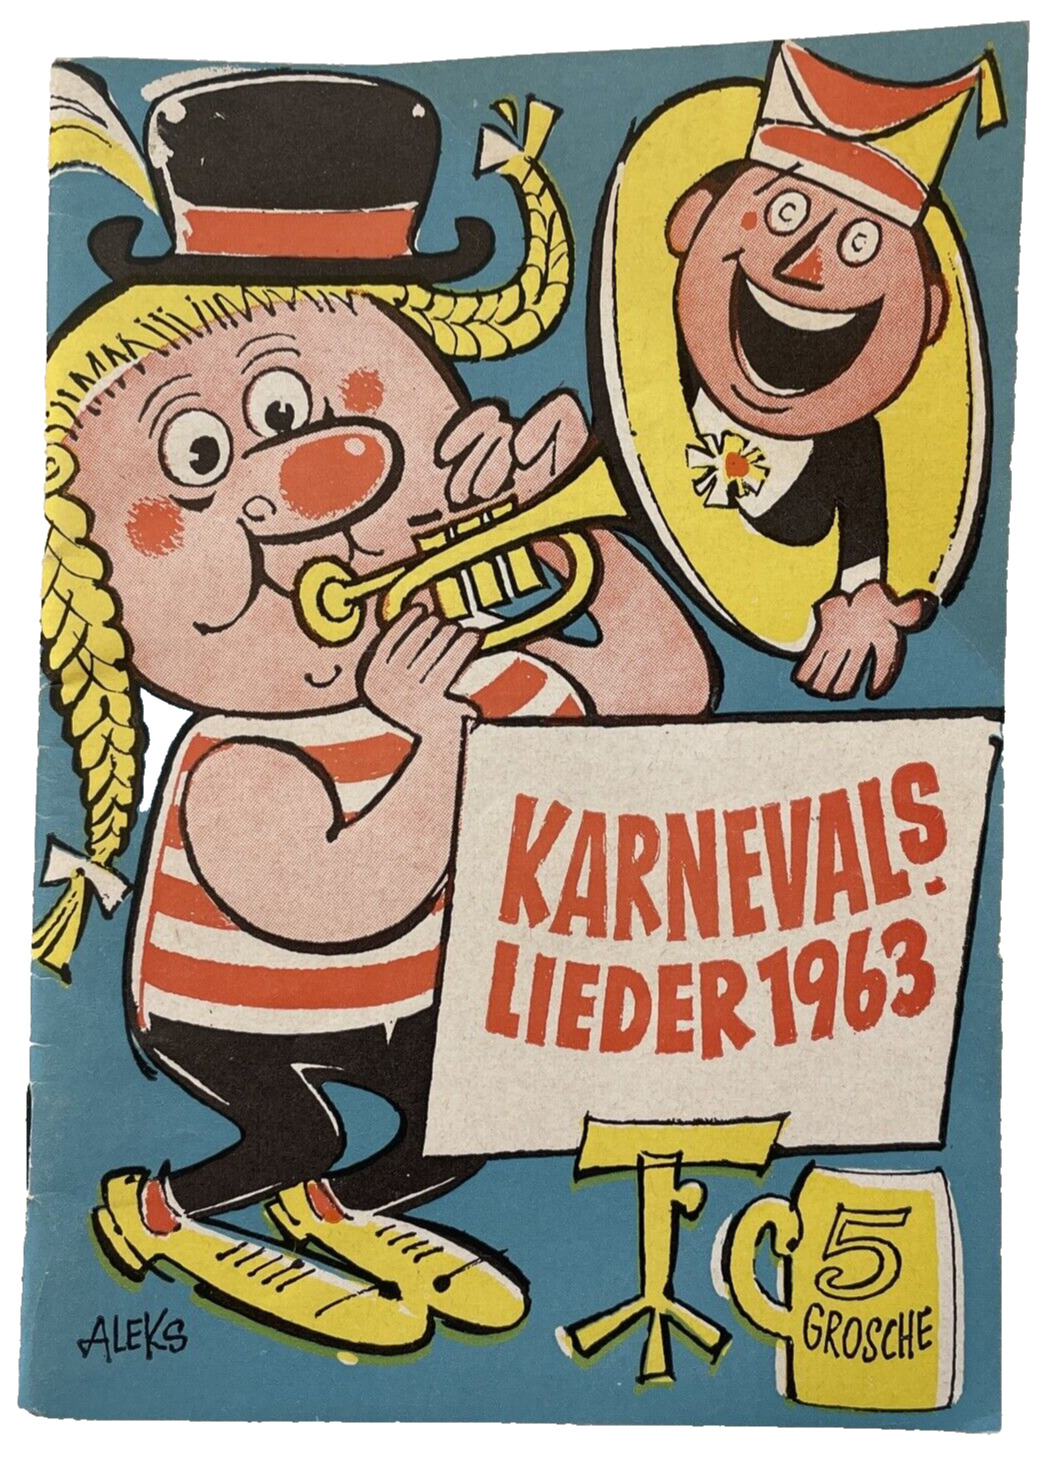 Karnevals Lieder 1963 German Music Lyrics Booklet 4x6 inches 40 pages